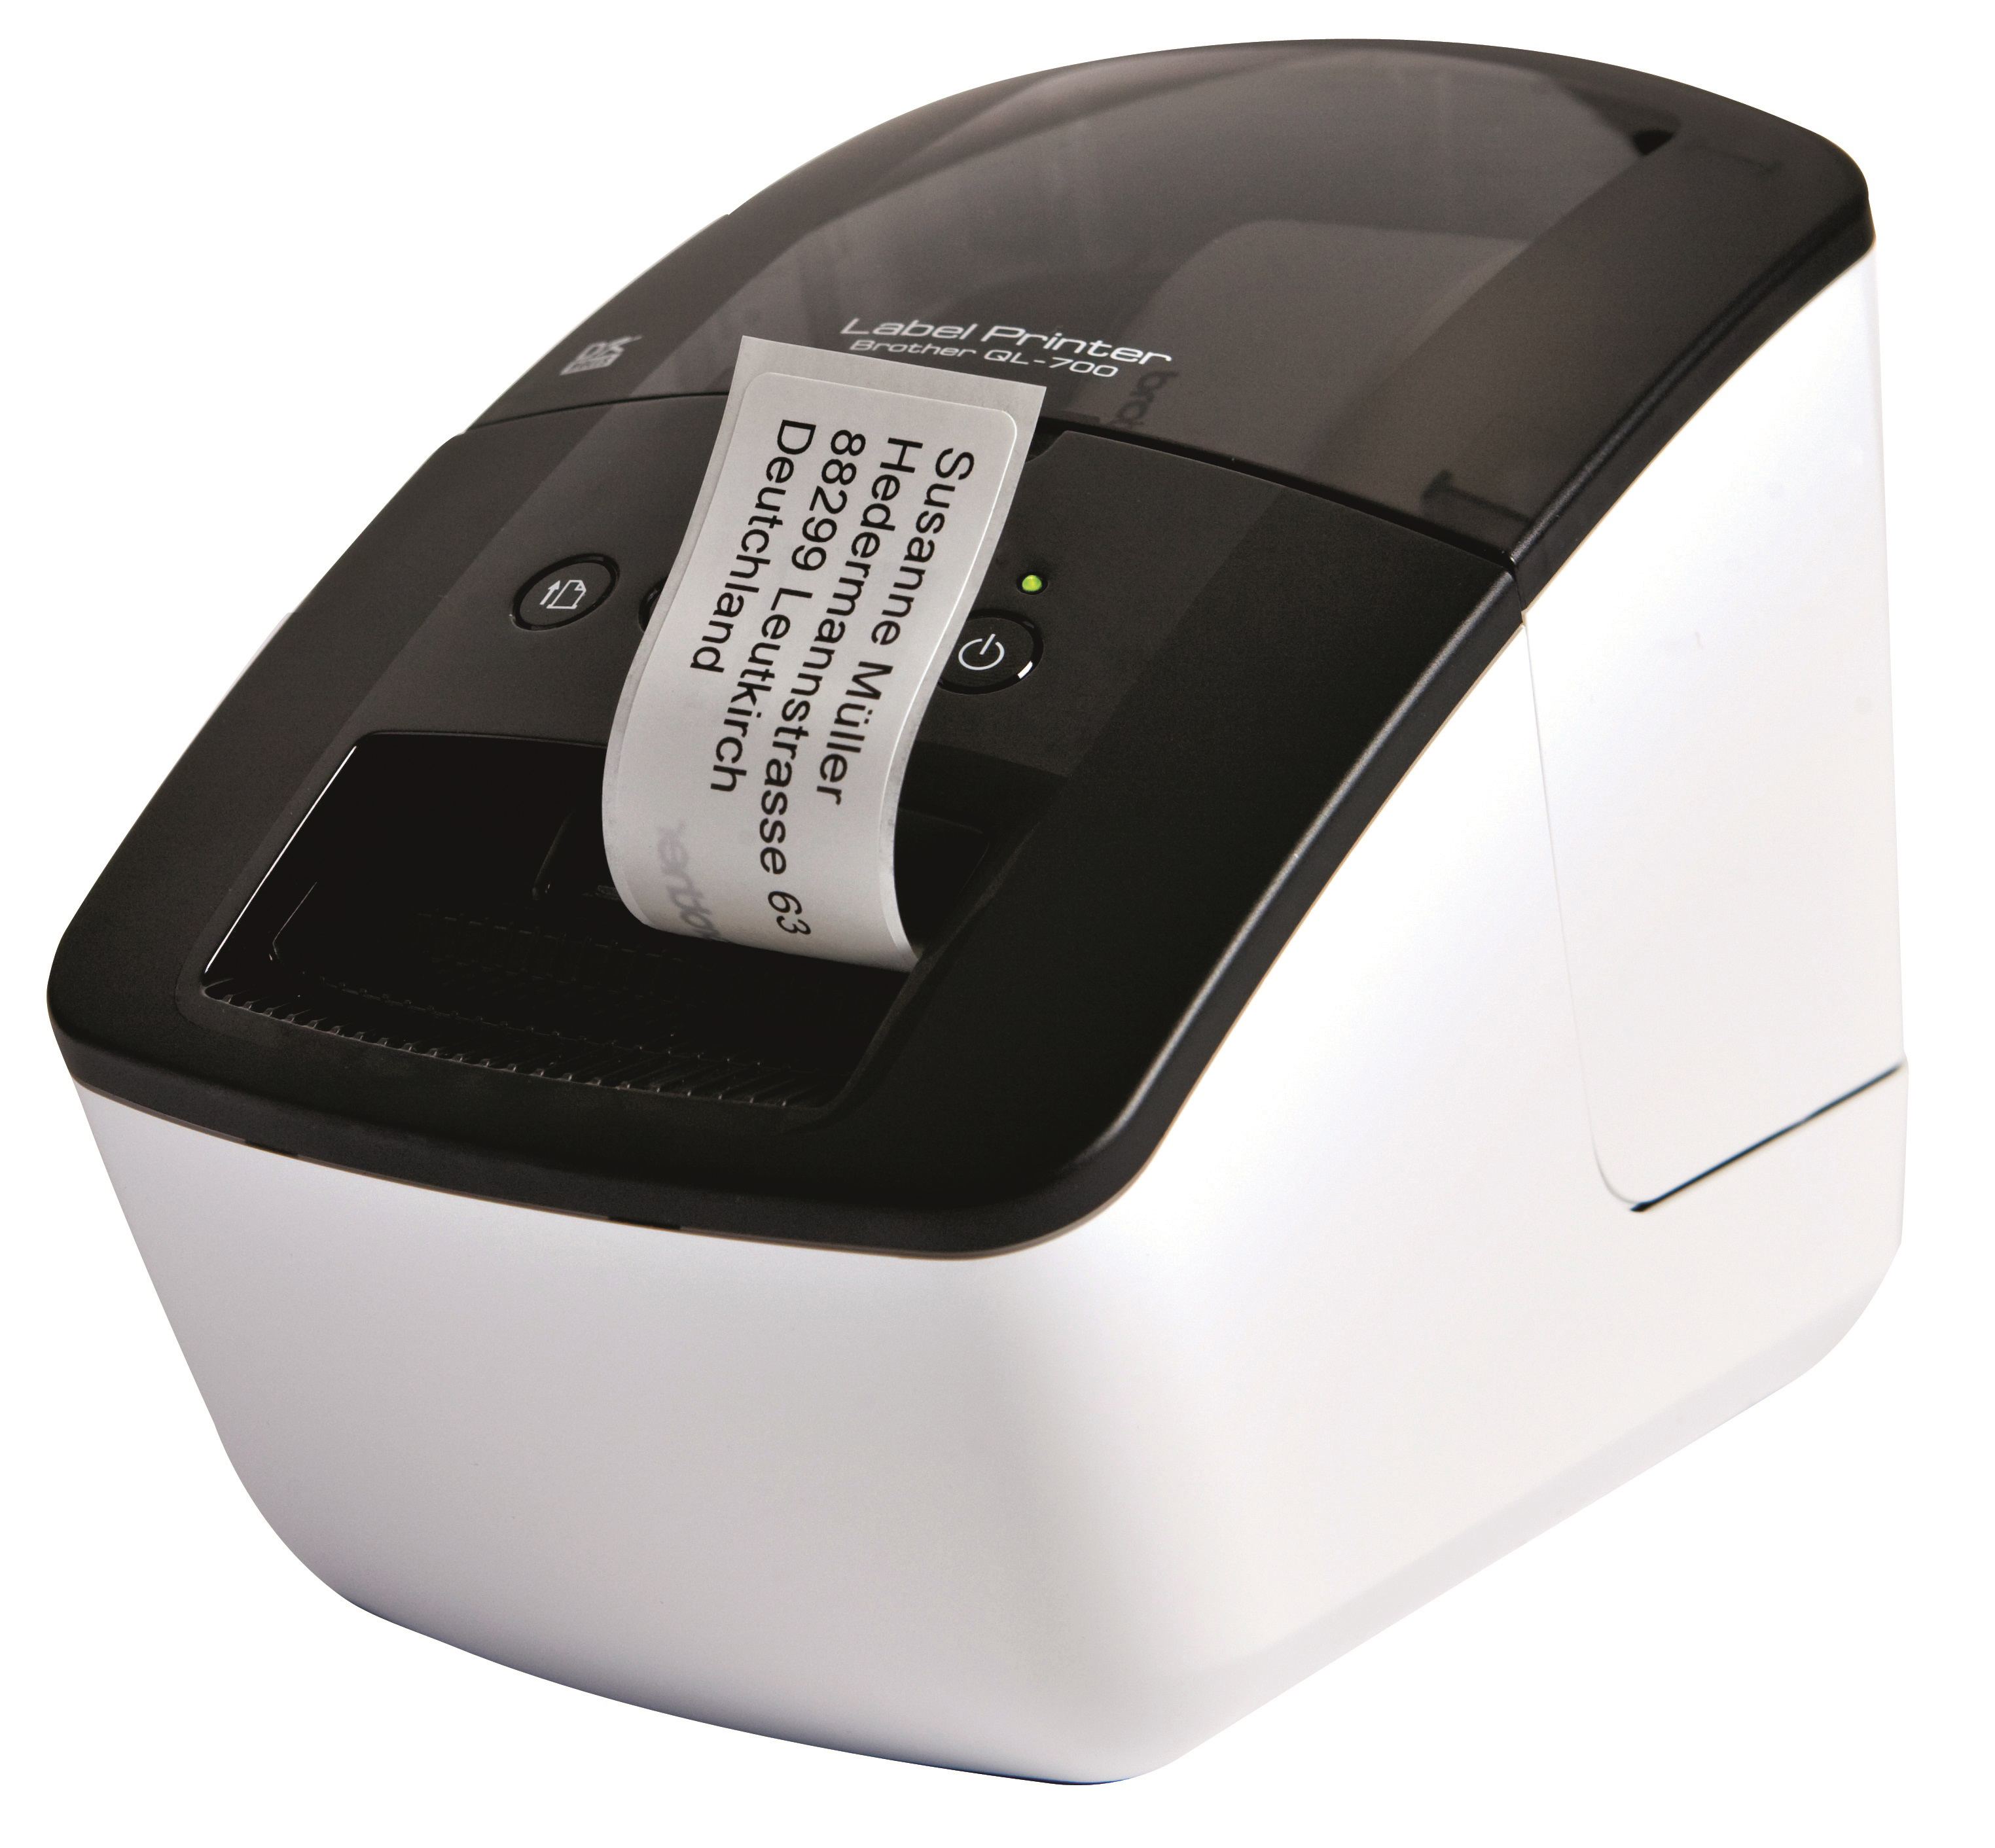 PTOUCH Profi-Labelprinter QL-700 avec 2 rl. étiquettes avec 2 rl. étiquettes